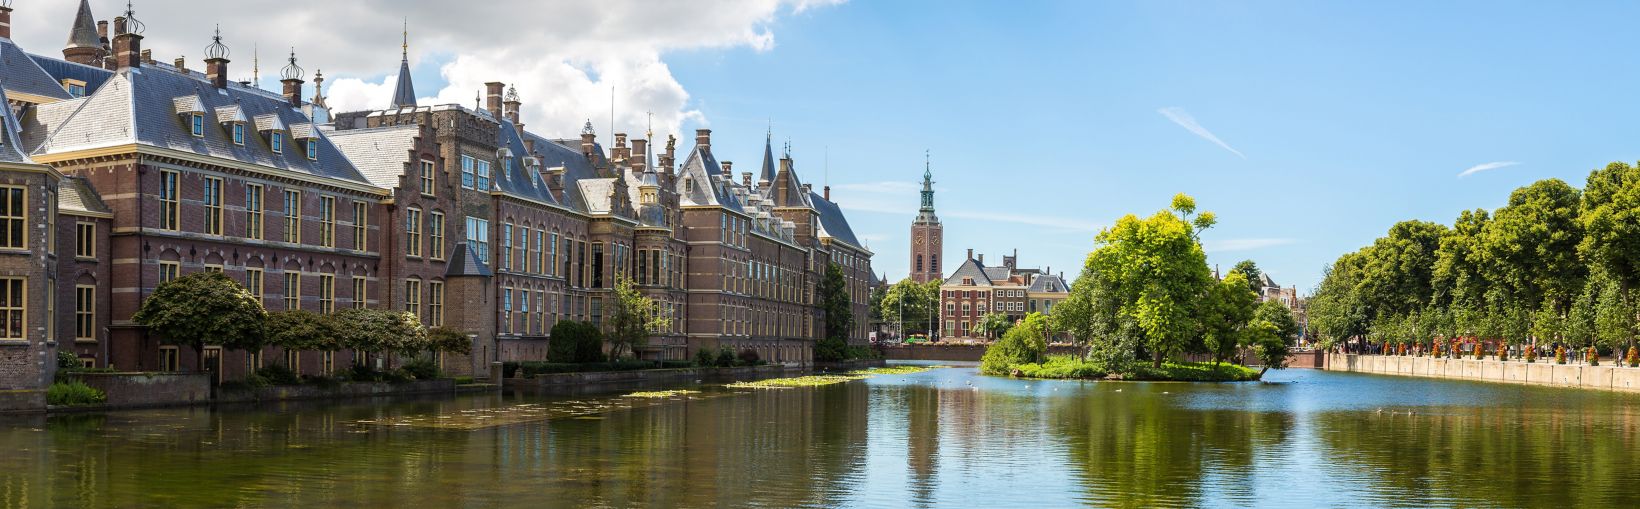 Palais de Binnenhof, parlement néerlandais de La Haye dans une belle journée d’été, Pays-Bas